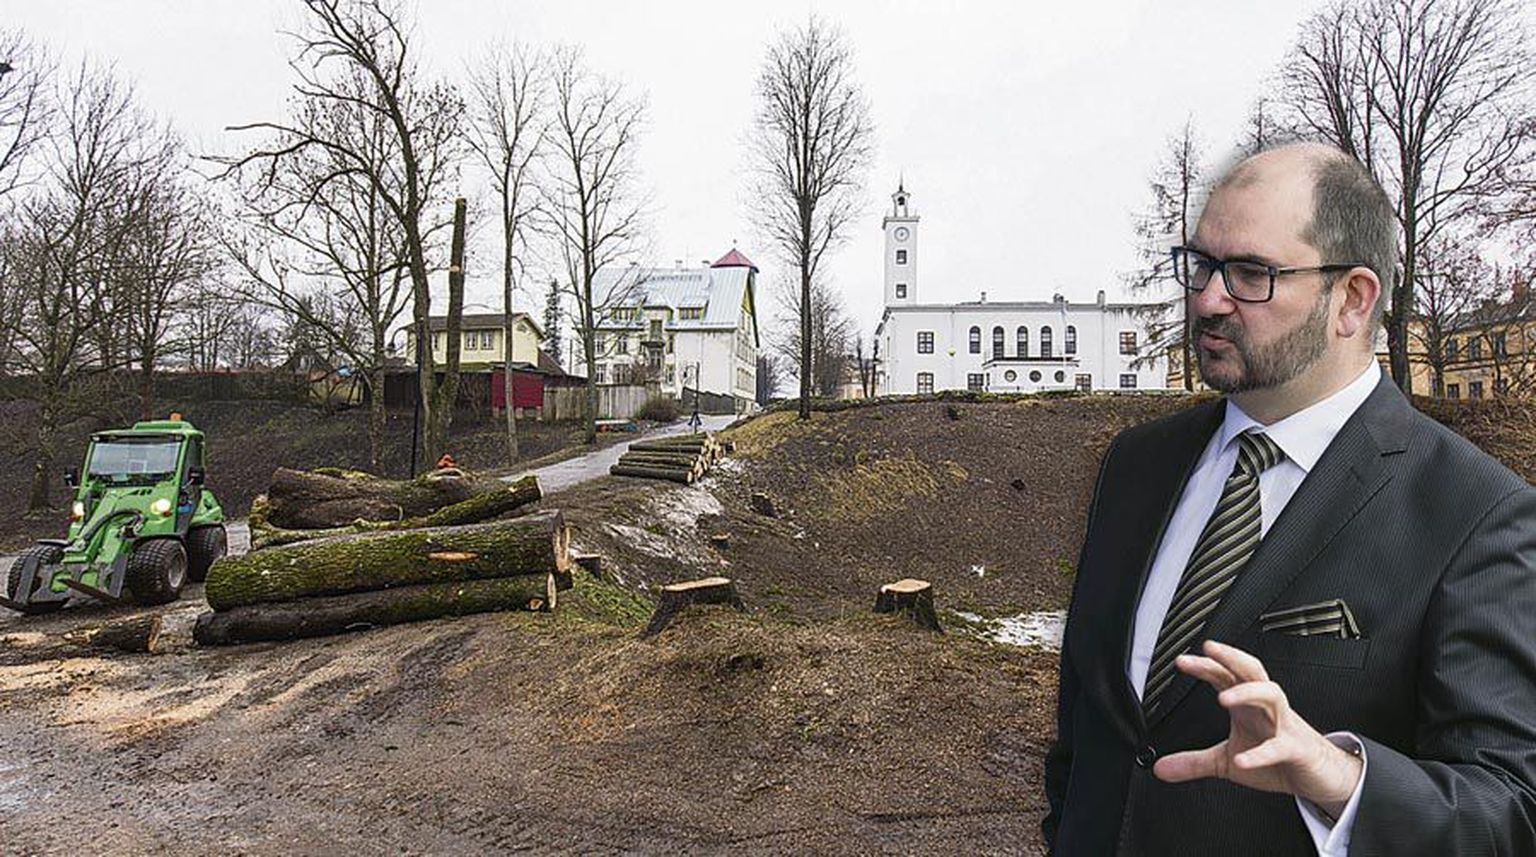 Viljandi kodanik süüdistab linnapead Ando Kivibergi kehalises väärkohtlemises. Kahel mehel tekkis raekoja juures konflikt paari kuu eest linnavalitsuse hoone ja Trepimäe vahelt mahavõetud puude pärast.